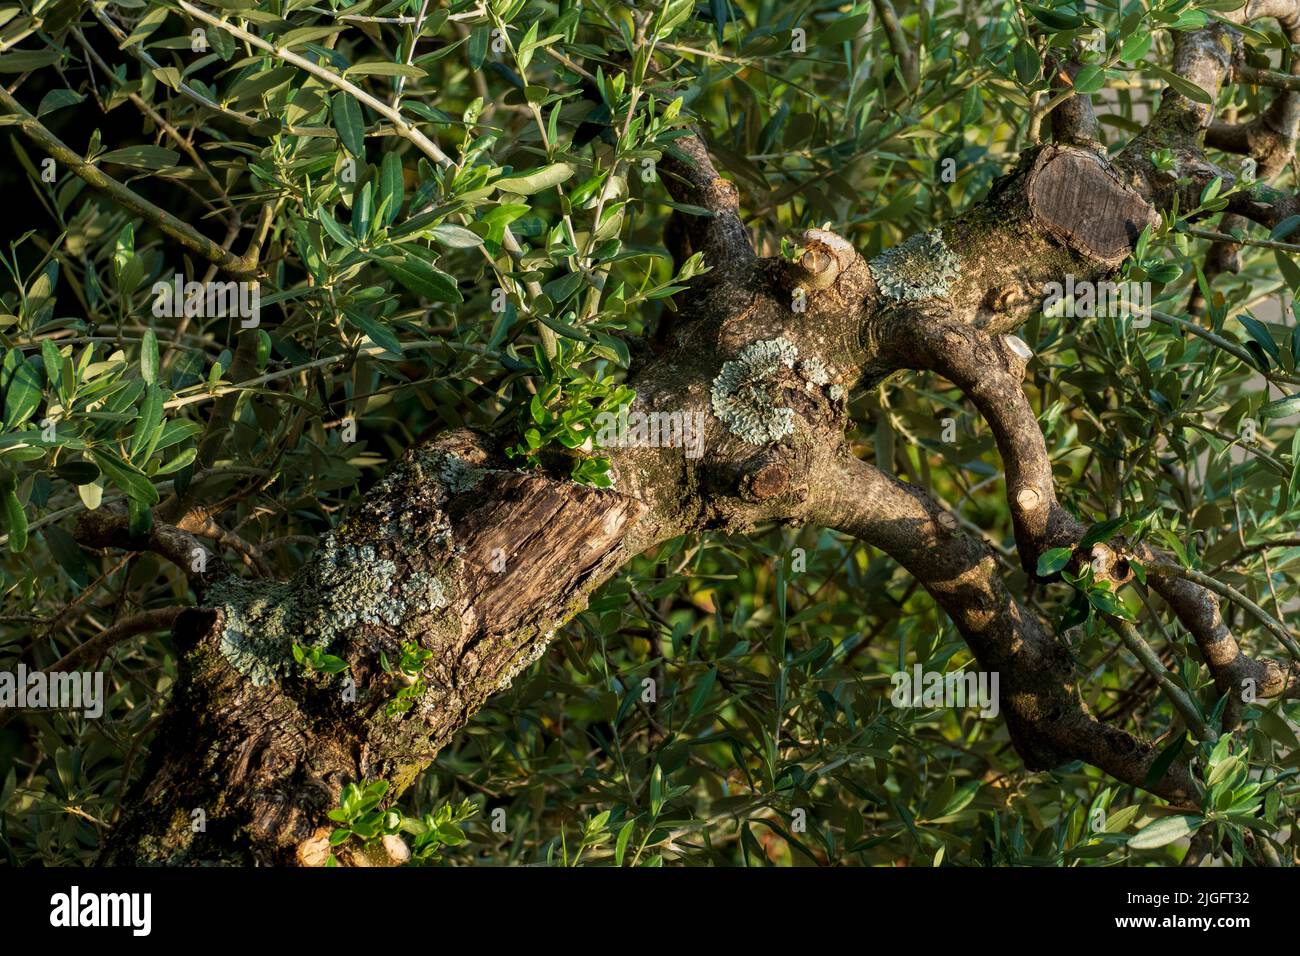 Alter knorriger Baum, Olivenbaum, mit Verknorpelungen und Astlöchern Stock Photo